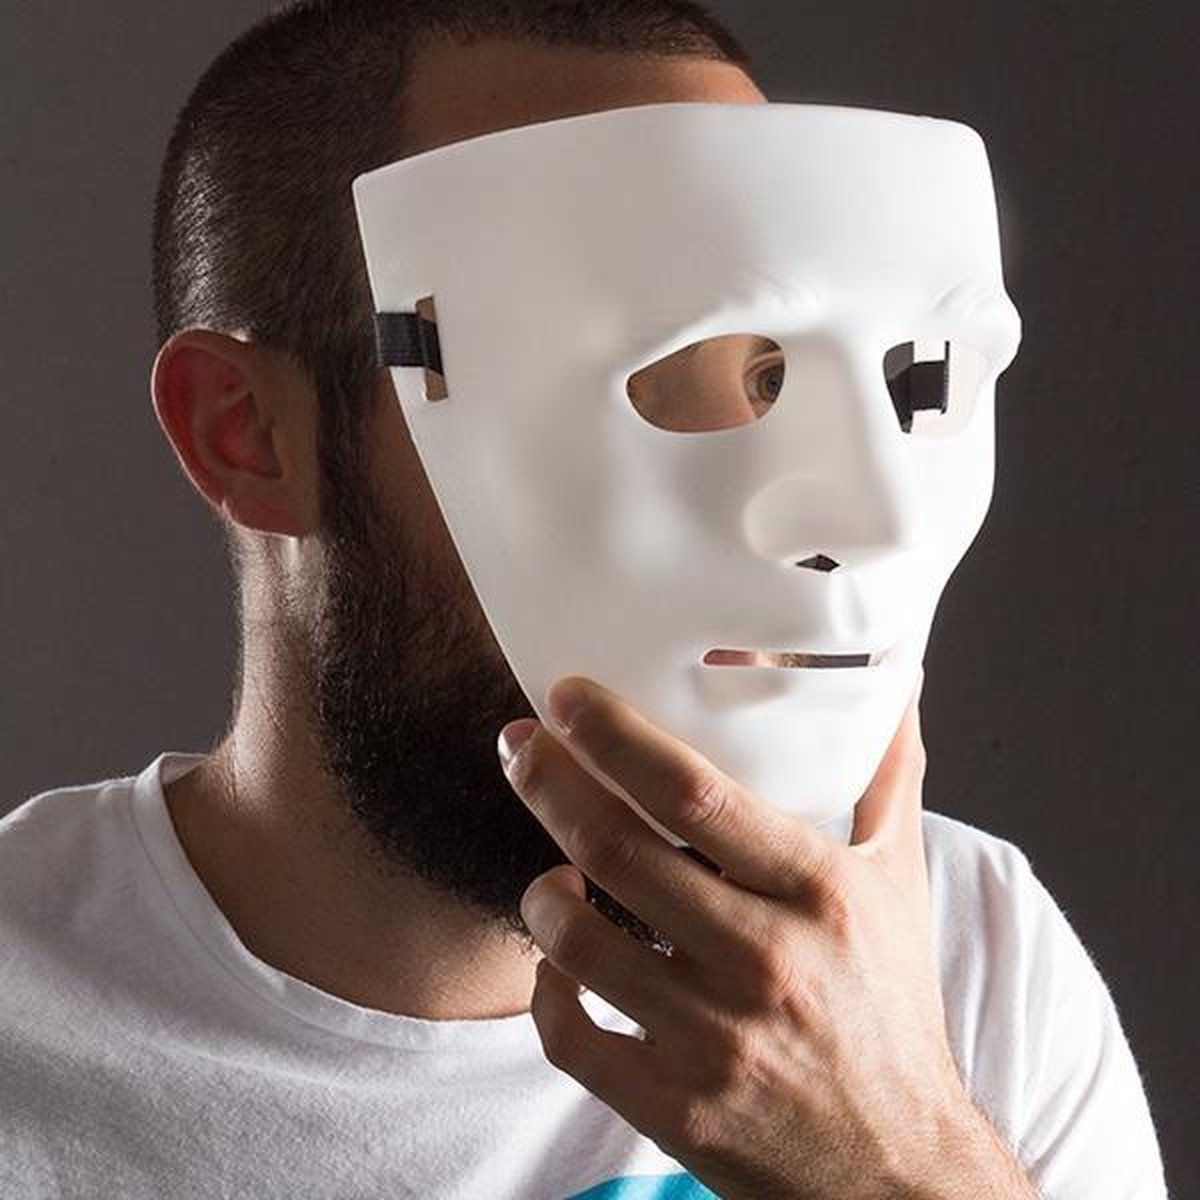 Можно заказать маску. ЧИТЕРА маска ЧИТЕРА маска ЧИТЕРА маска ЧИТЕРА. Современные маски. Маска анонима. Маска для скрытия лица.